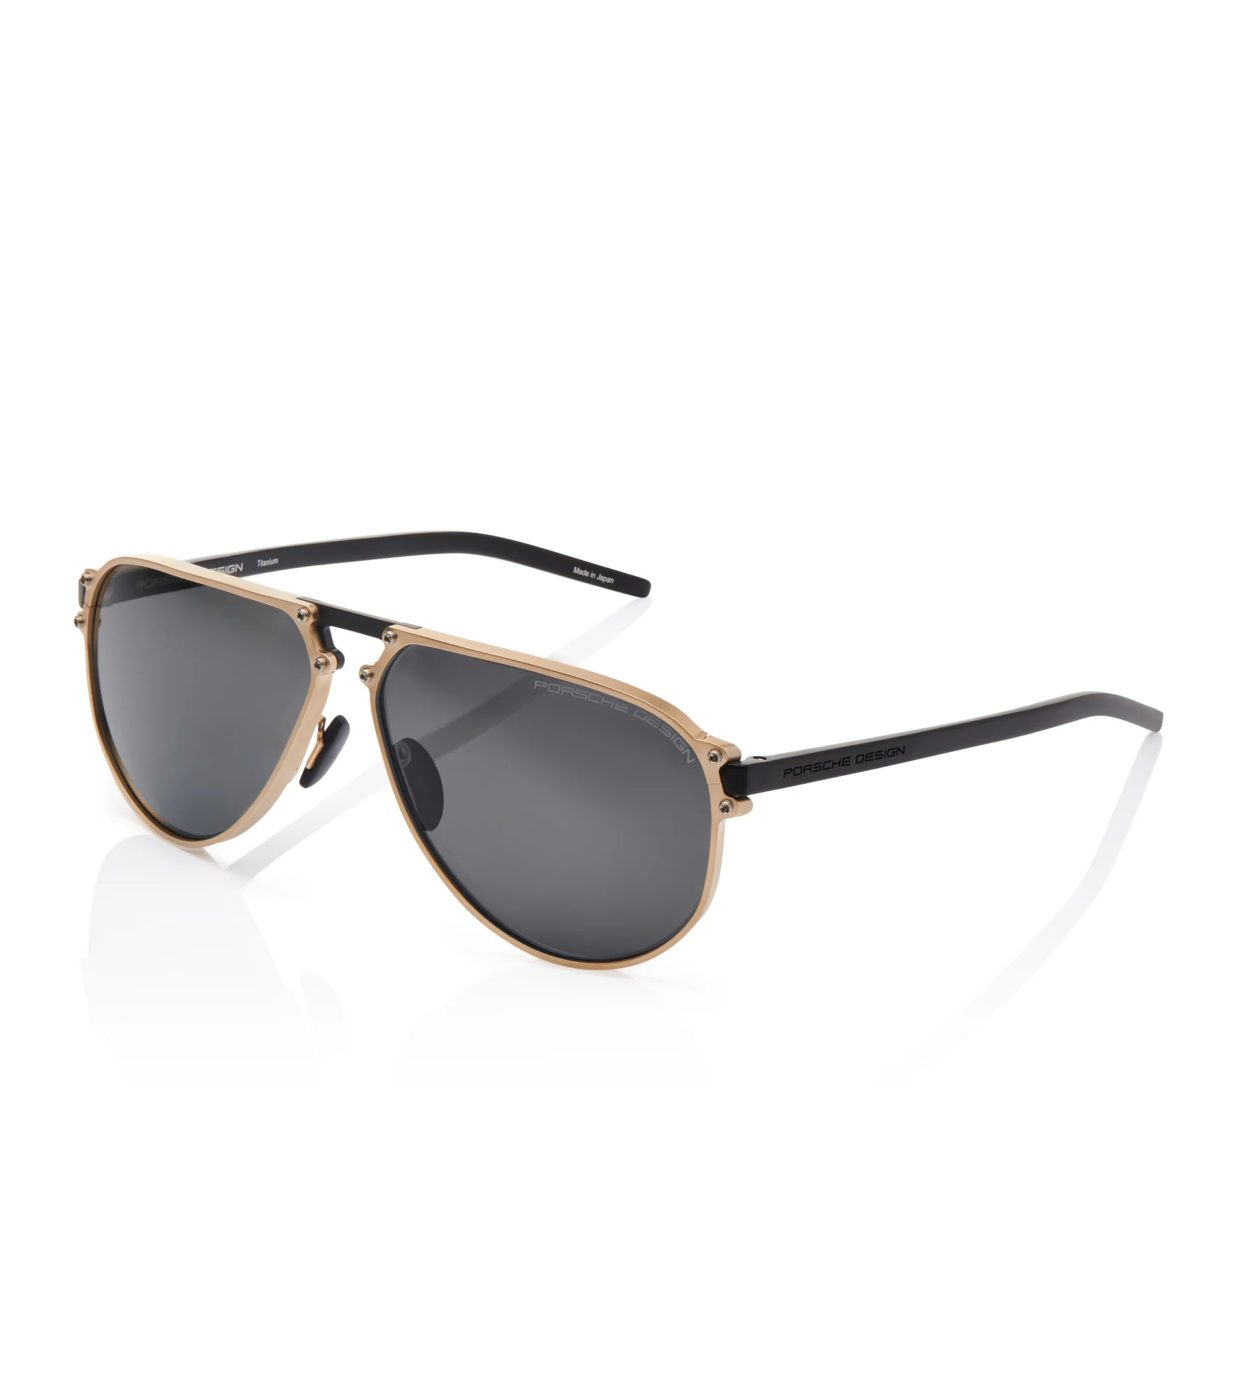 Porsche Design Release Exclusive P'8685 Titanium Sunglasses